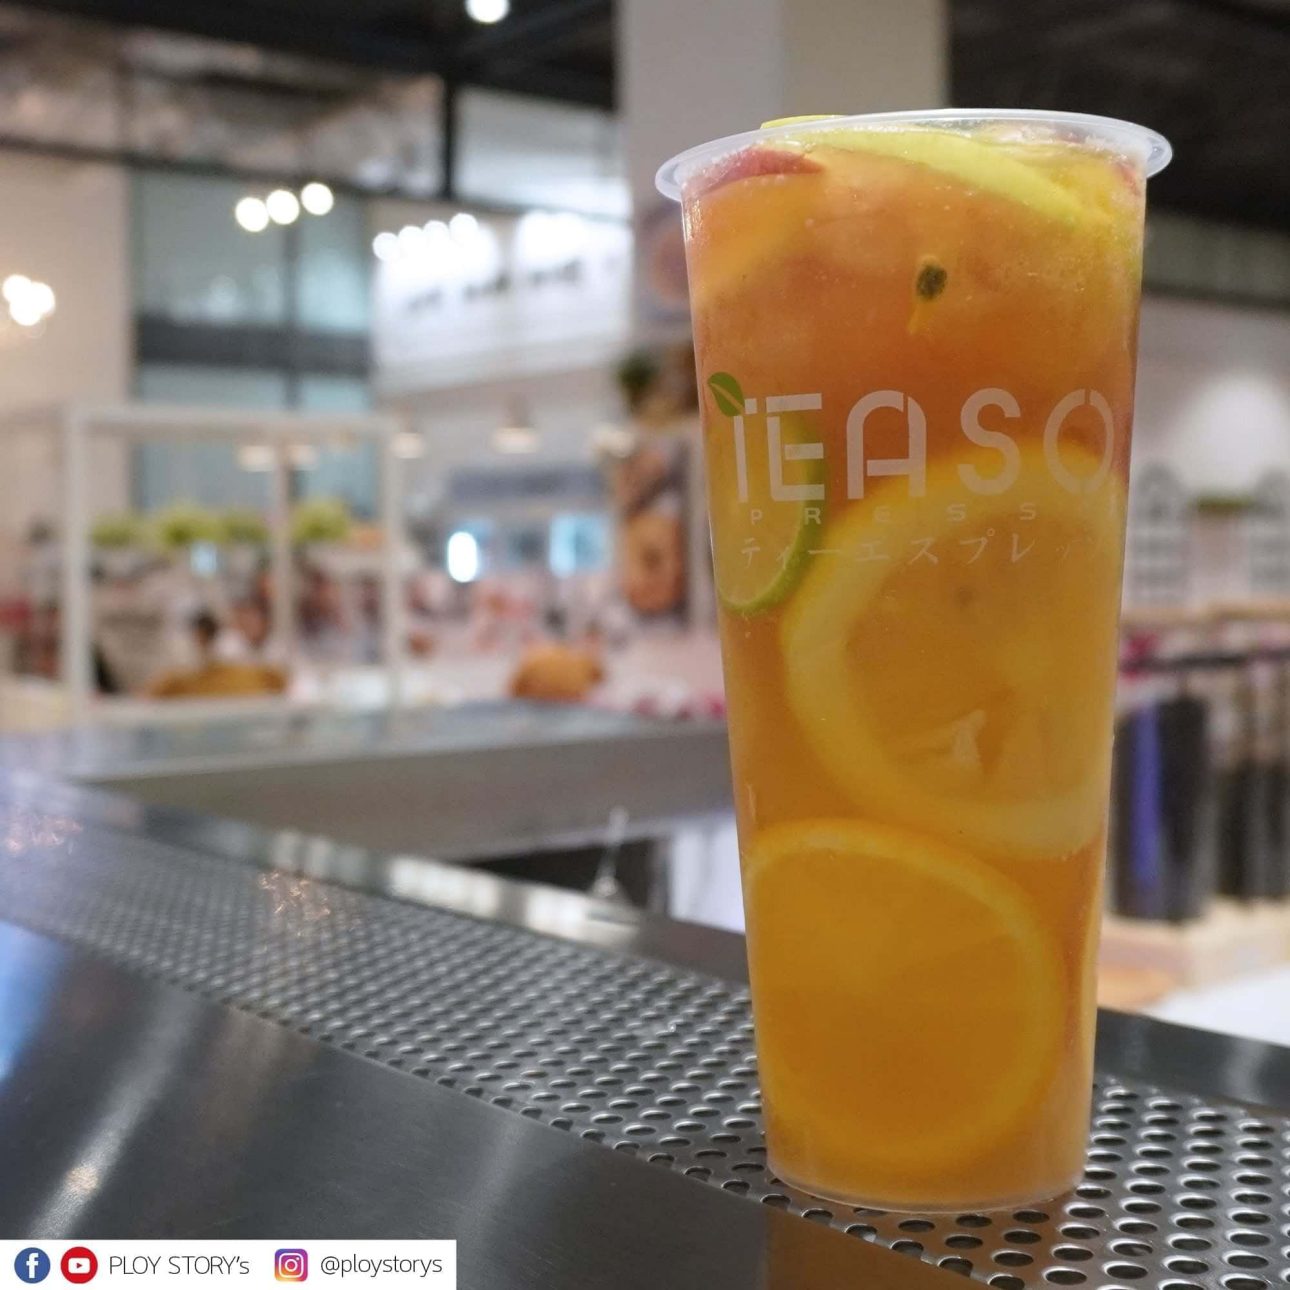 รีวิวร้านชา TEASO สวรรค์ของคนรักชา ต้นตำรับจากฮ่องกง คนลดน้ำหนักกินได้แบบไม่รู้สึกผิด 23